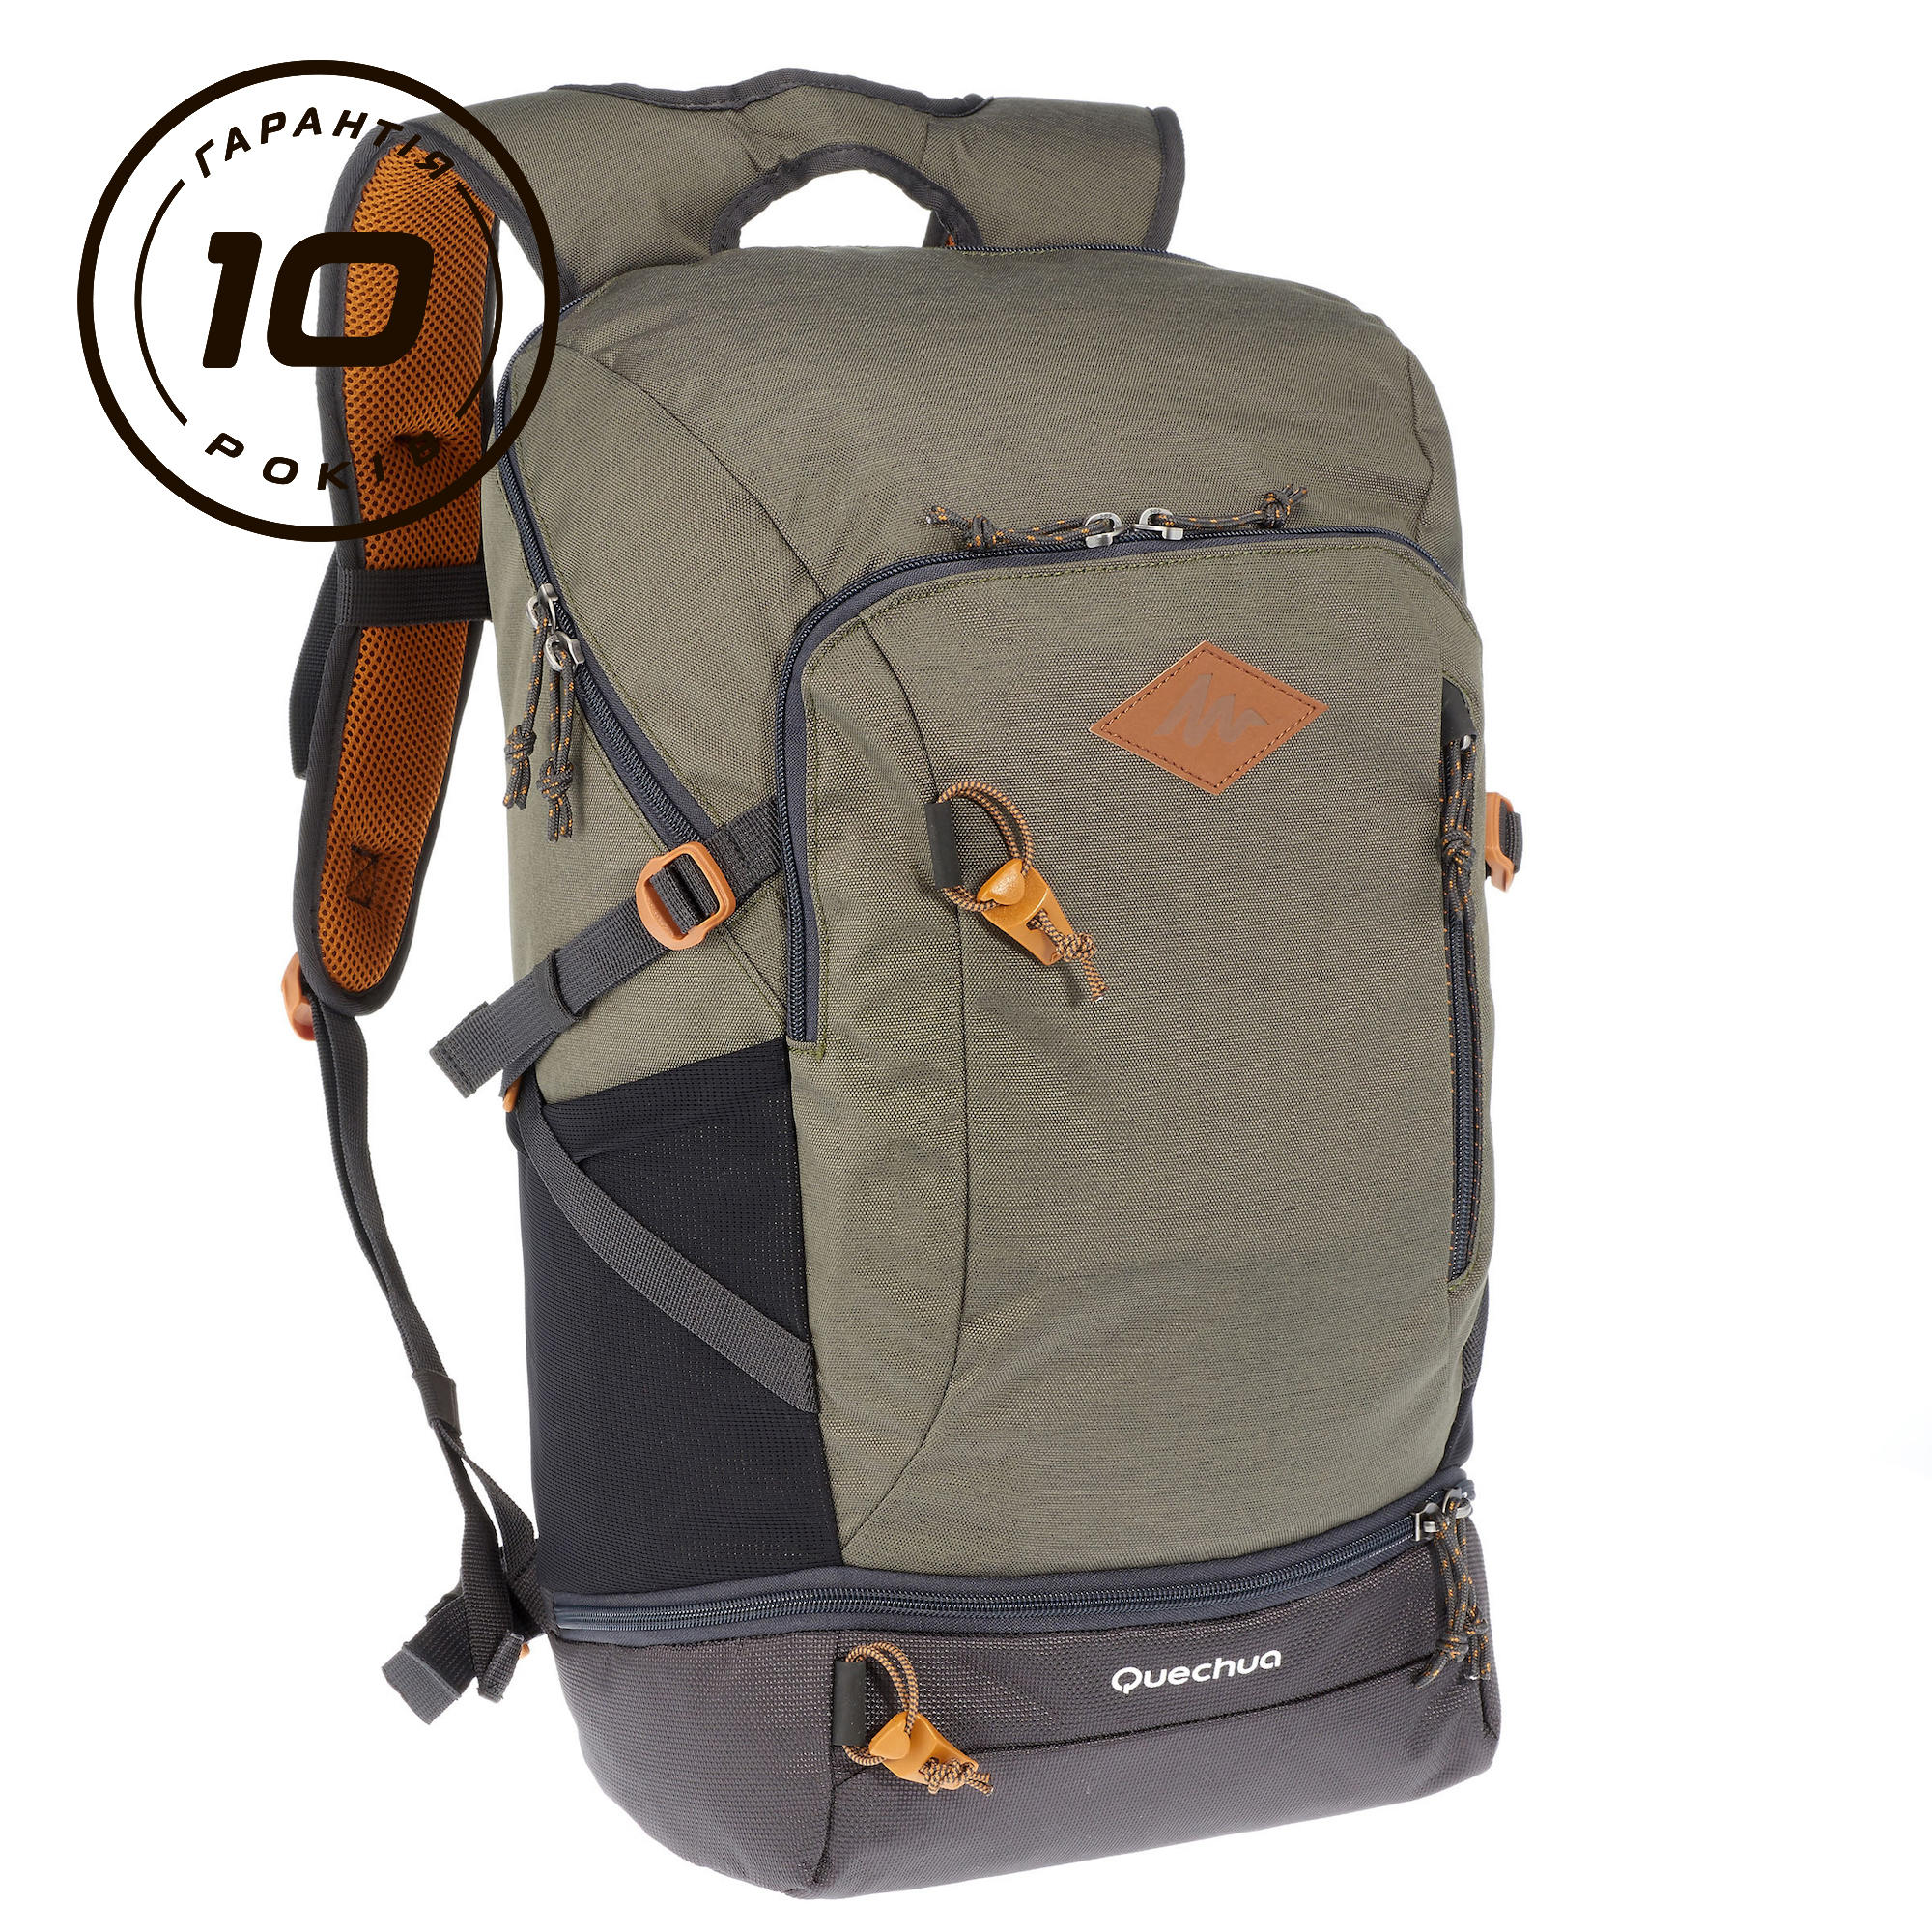 Hiking backpack 30L - NH500 1/23